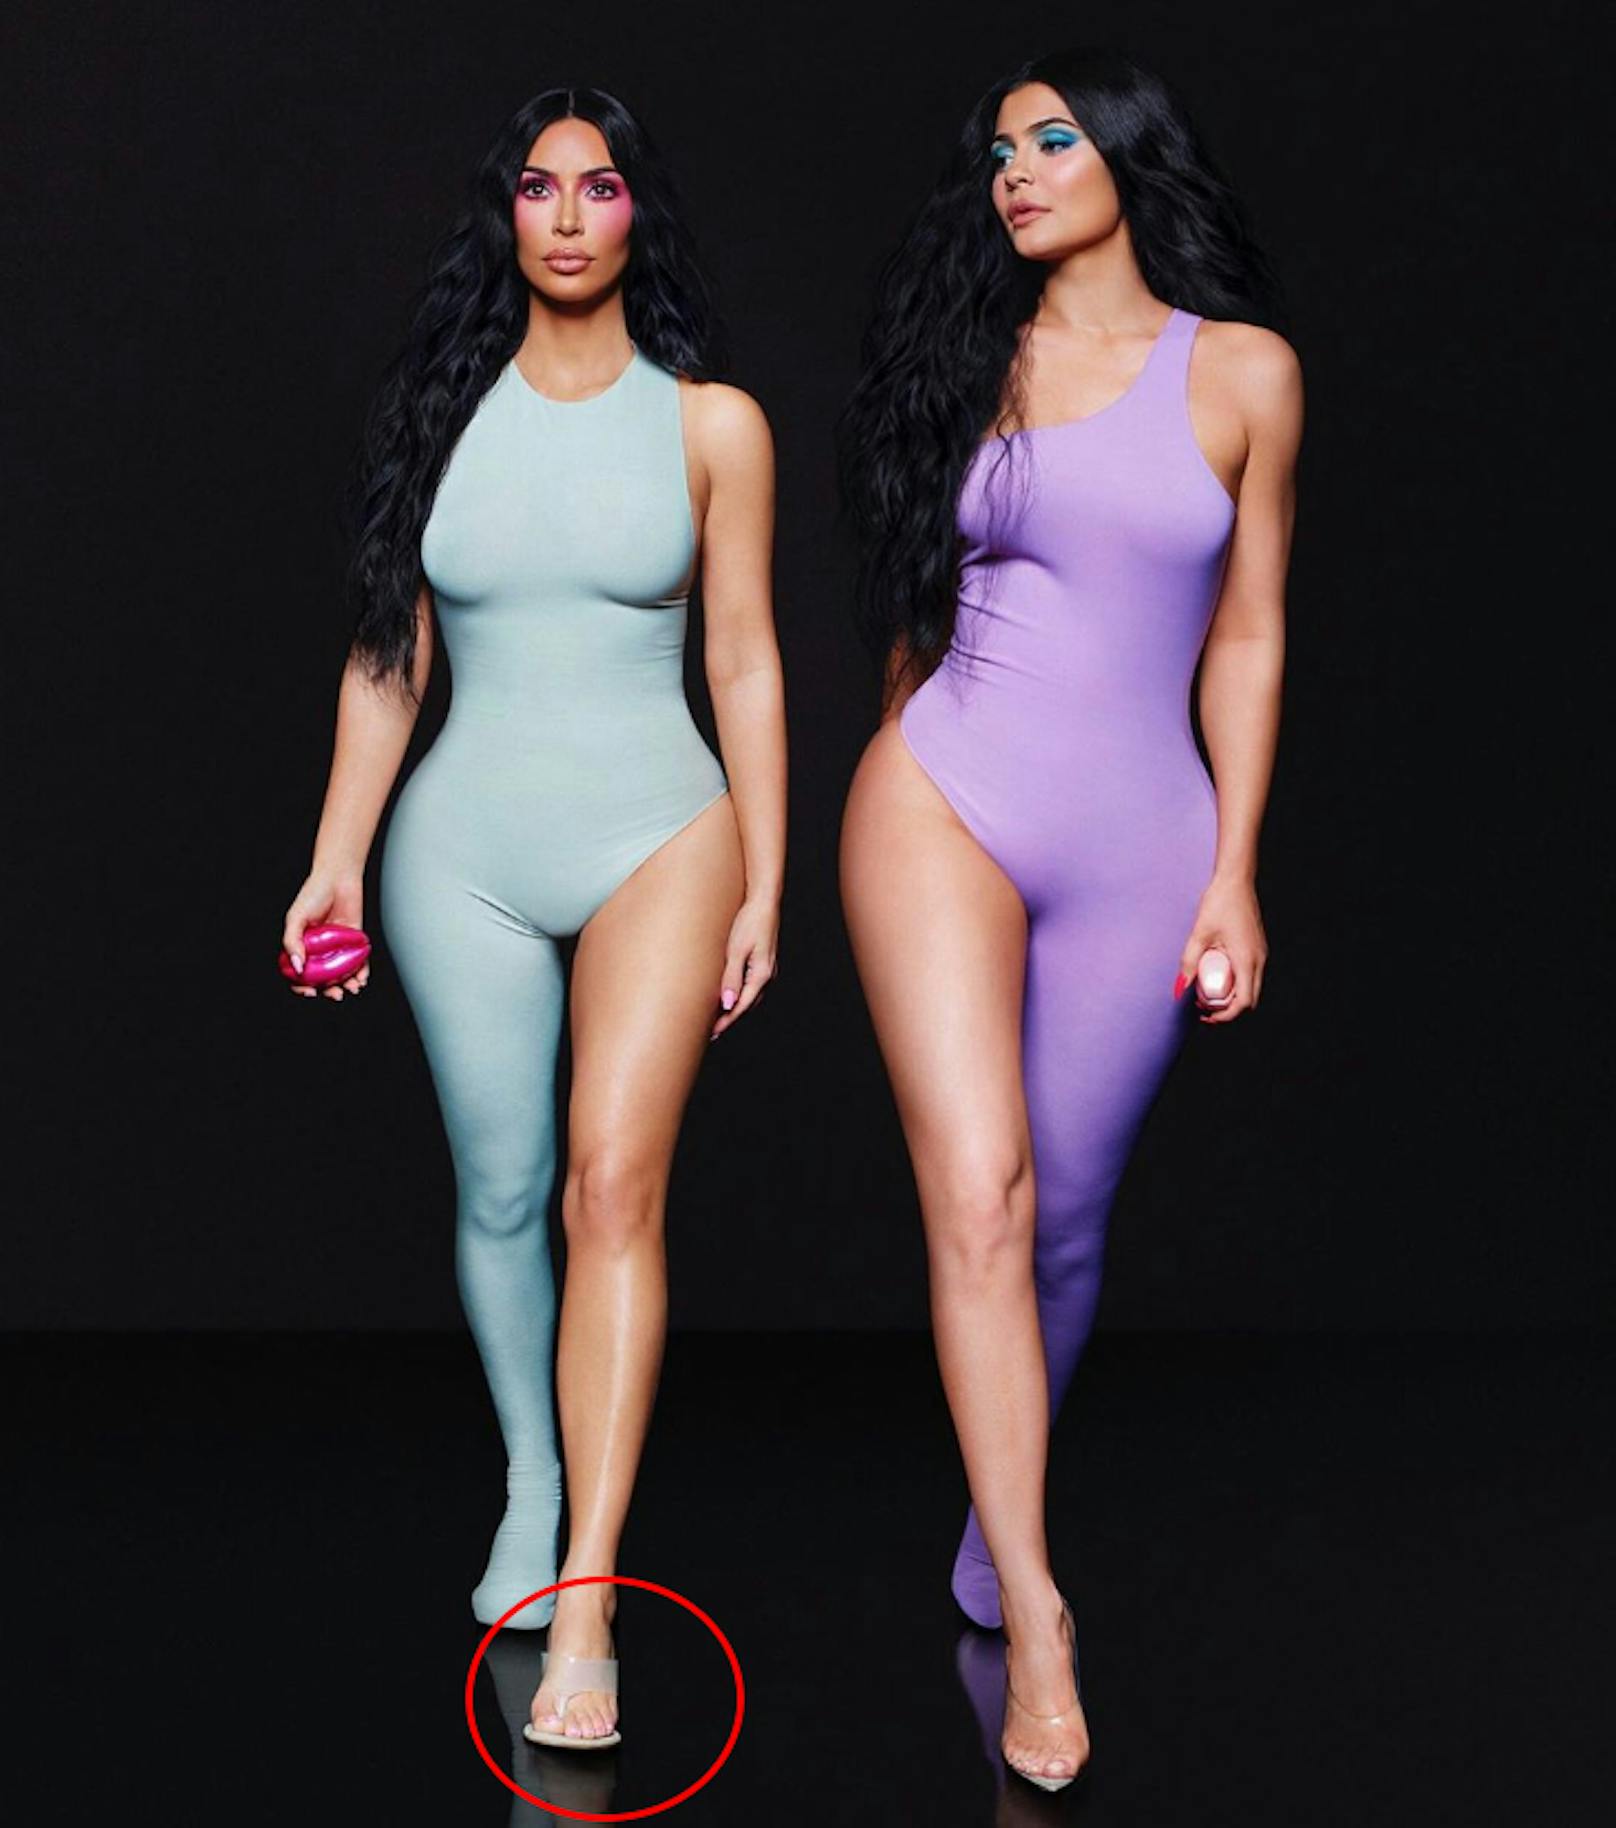 Kim Kardashian und ihre Schwester Kylie Jenner verkleideten isch als Twinni. Kim hier auf besonders großem Fuß unterwegs, kann aber nicht bis 5 zählen. Wer genau hinsieht, kann sechs Zehen erkennen. 